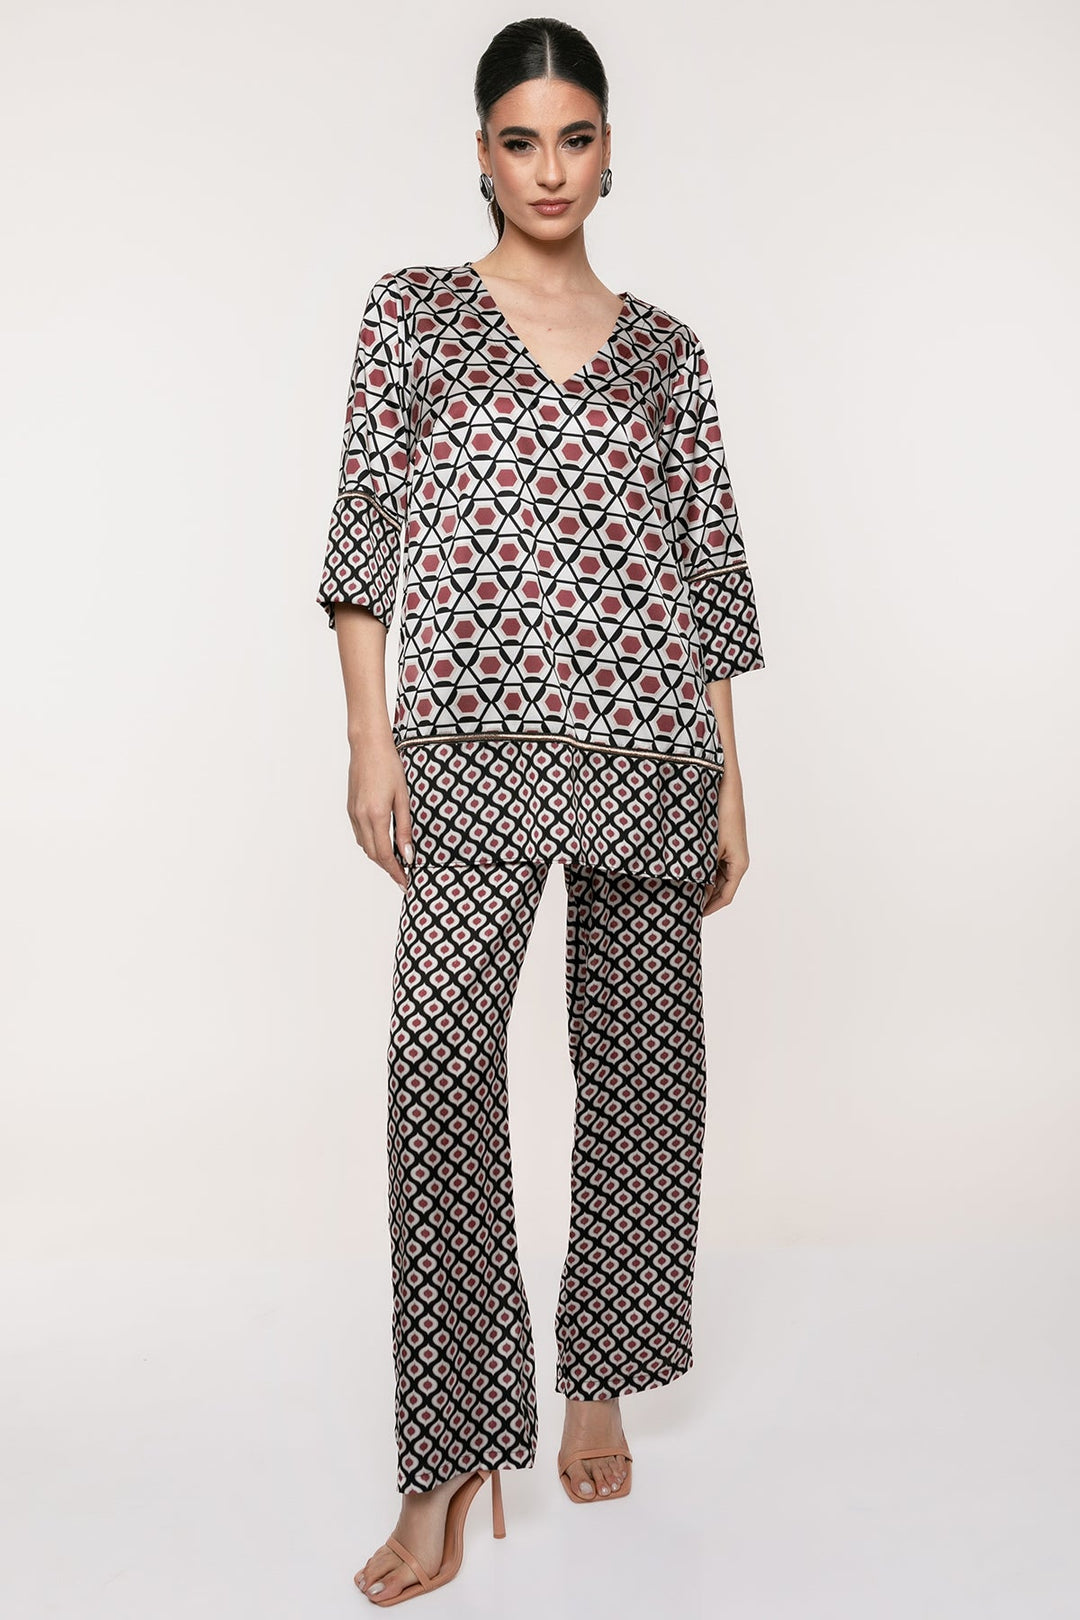 Σετ μπλούζα παντελόνι με γεωμετρικό μοτίβο Coelia - A Collection Boutique